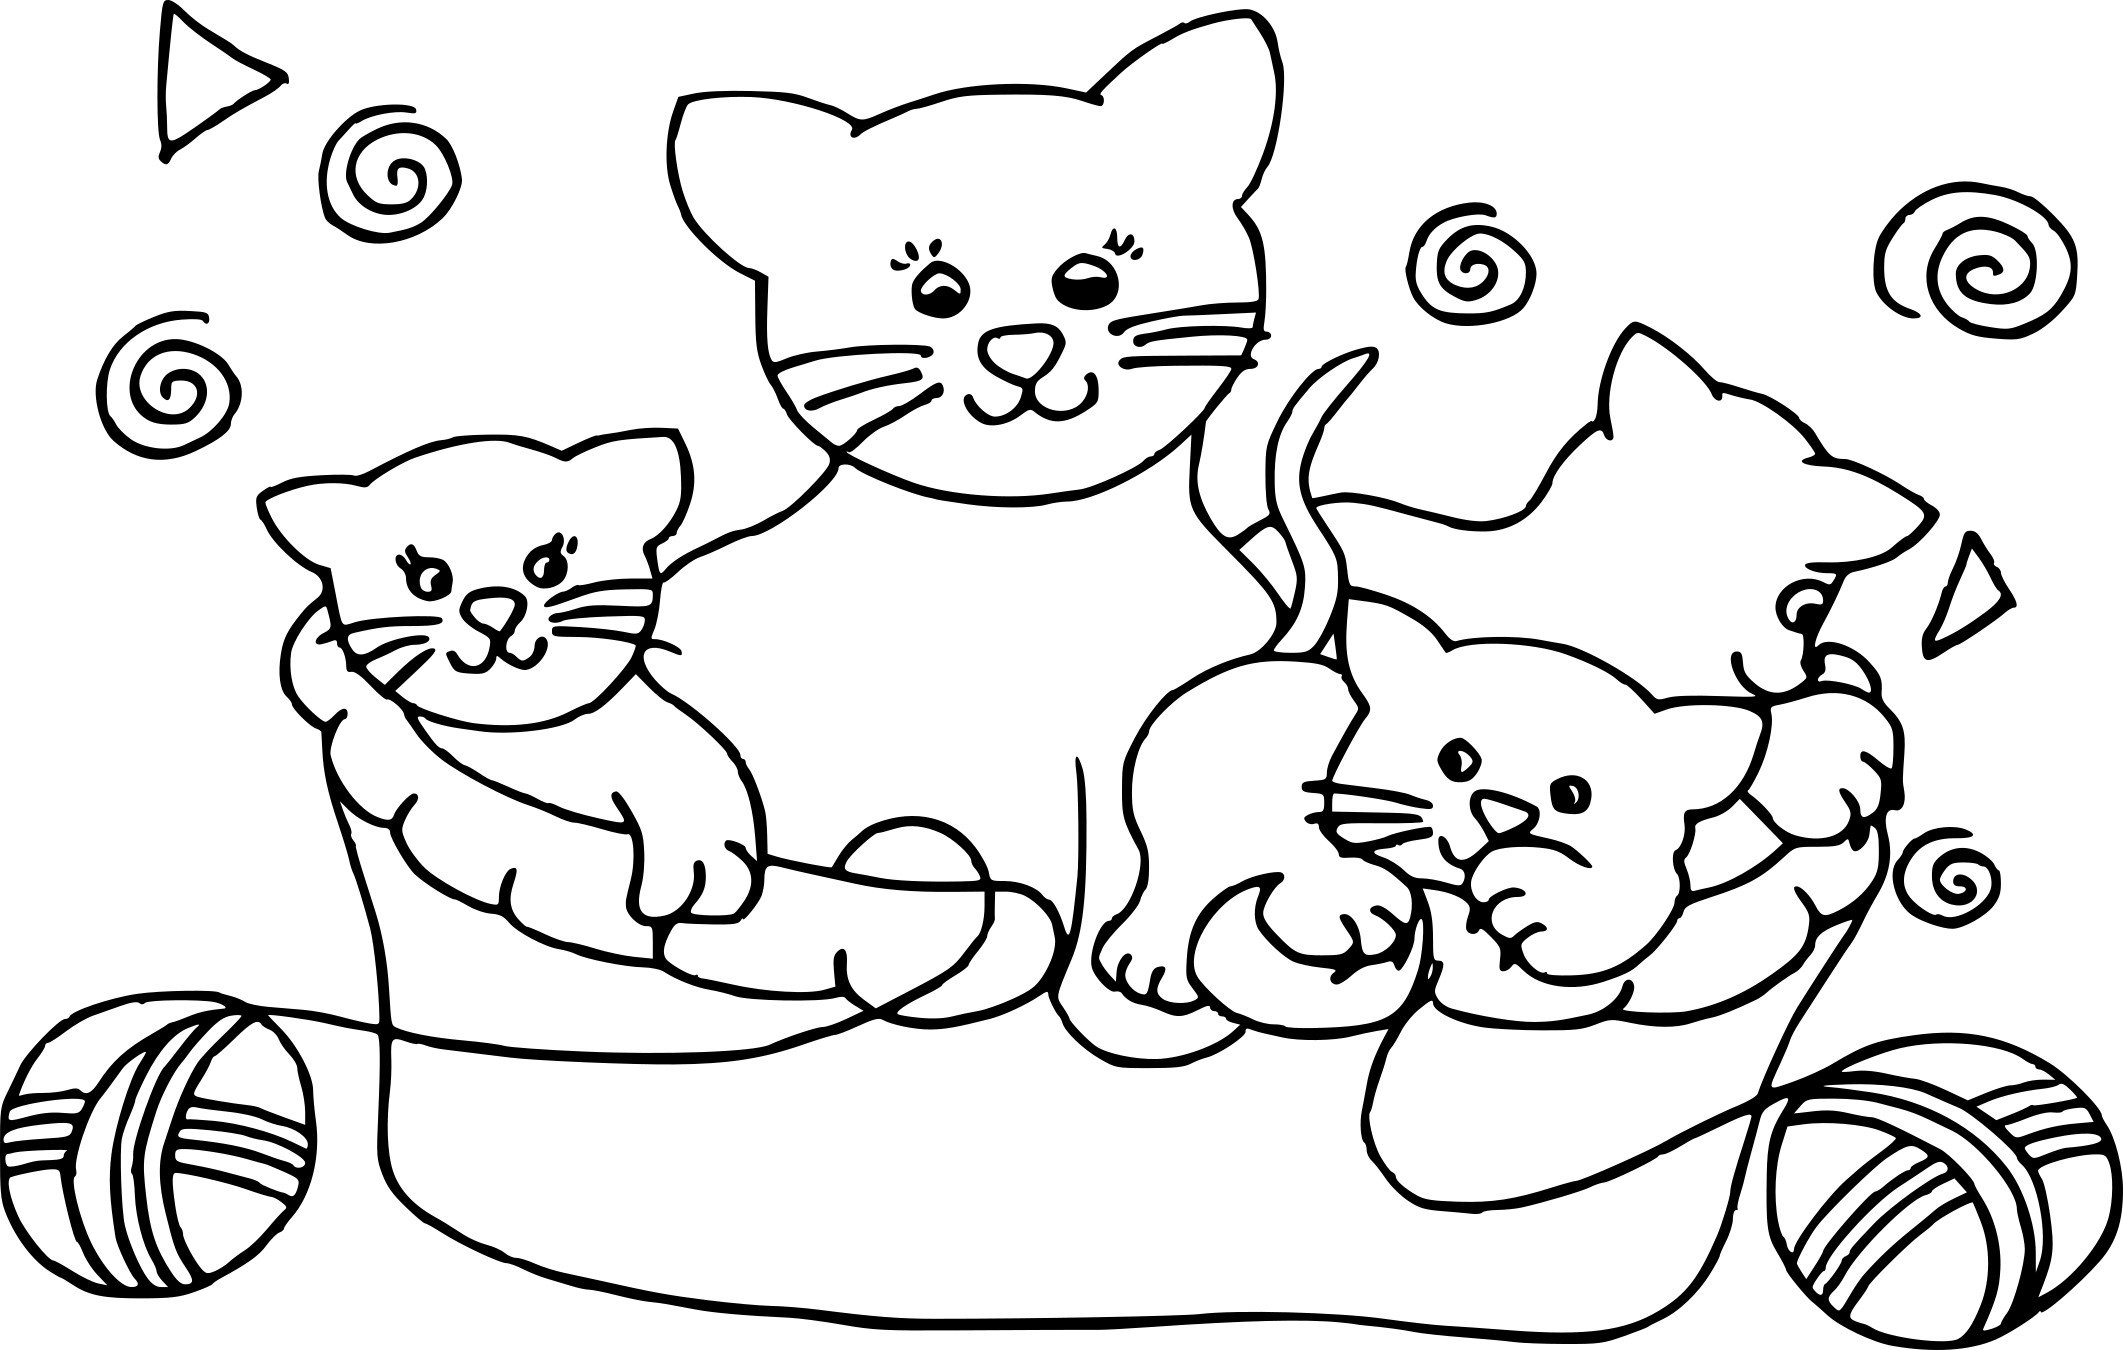 Котенок раскраска для детей